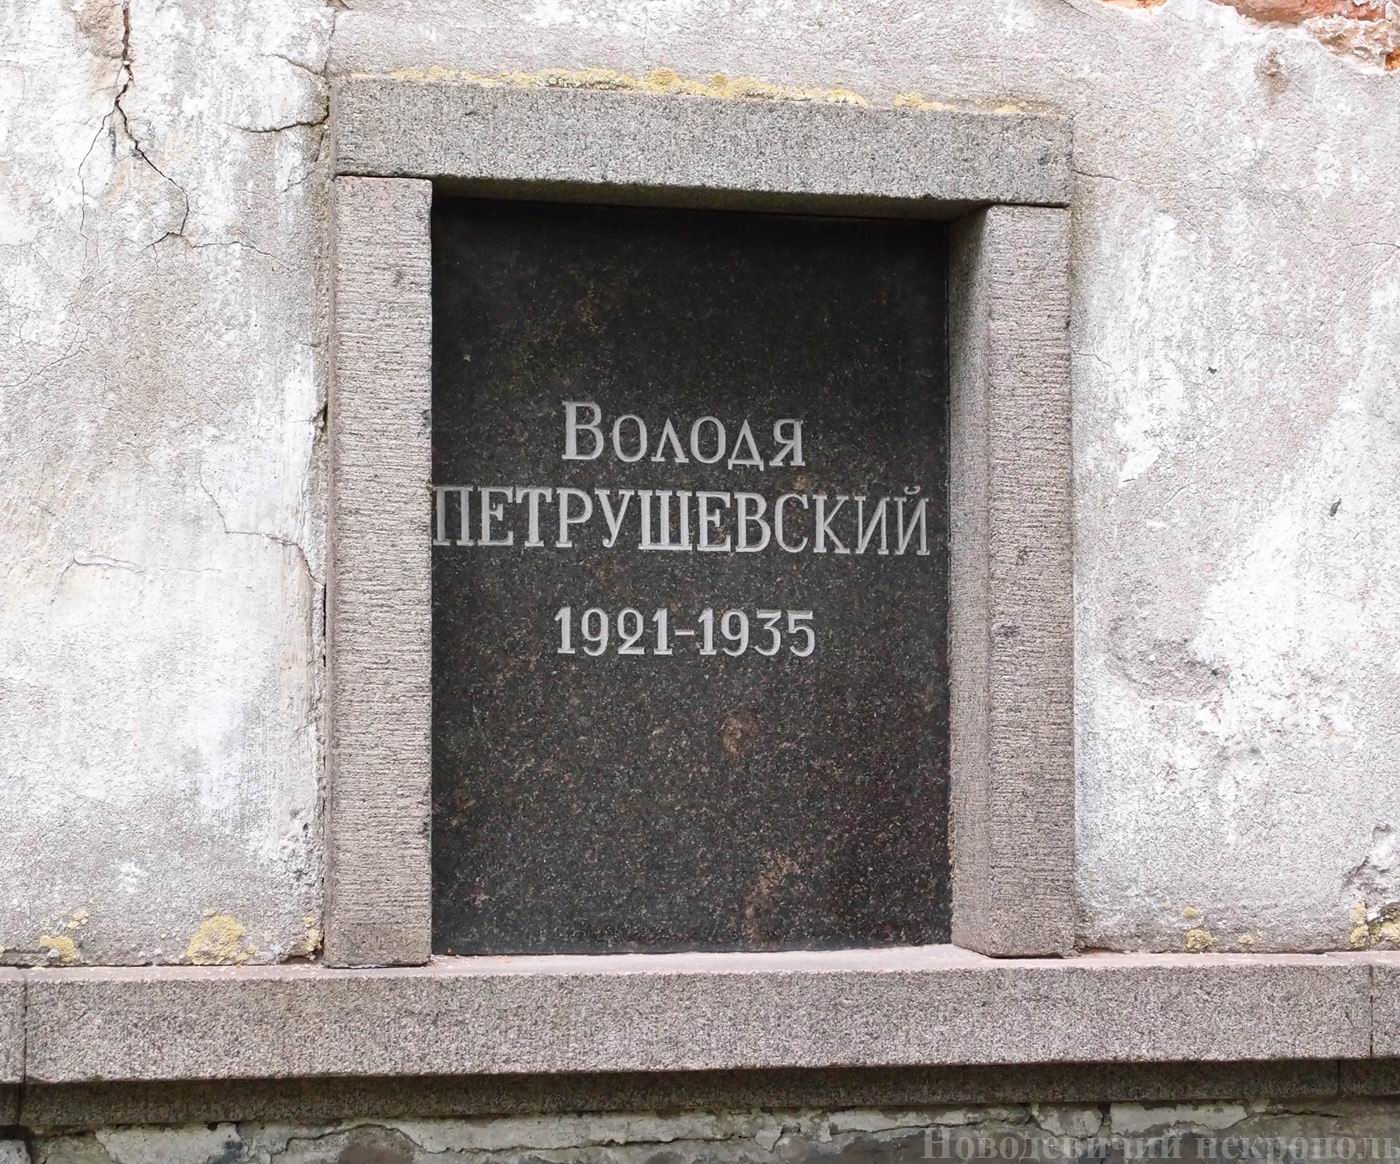 Плита на нише Петрушевского Володи (1921-1935), на Новодевичьем кладбище (колумбарий [3]-34). Нажмите левую кнопку мыши, чтобы увидеть общий вид секции.